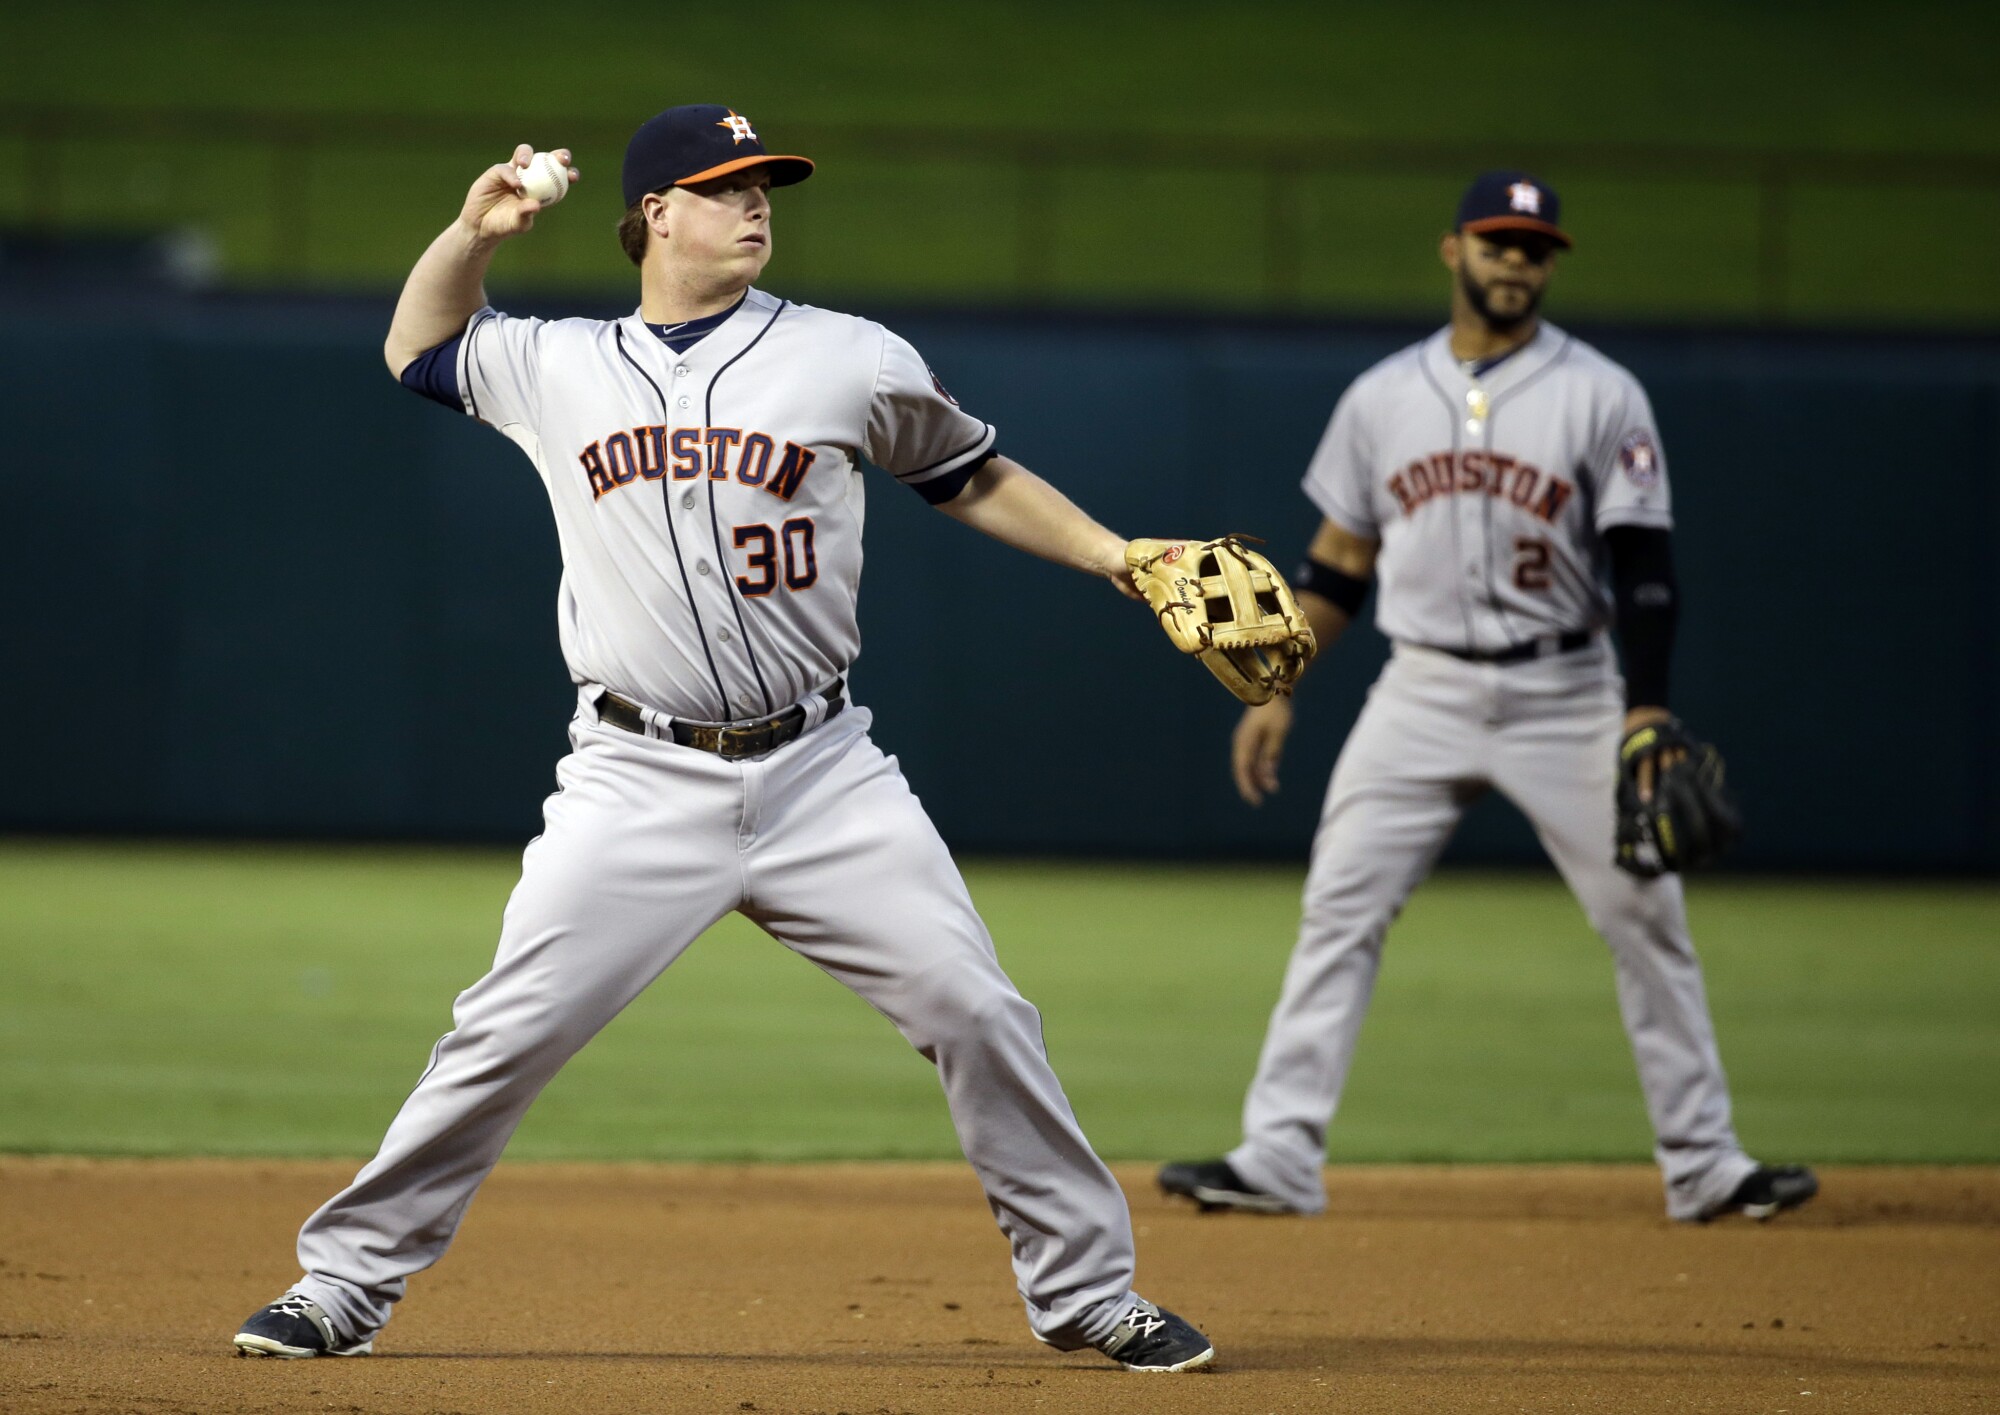 Houston Astros third baseman Matt Dominguez hits first against the Texas Rangers in September 2014.